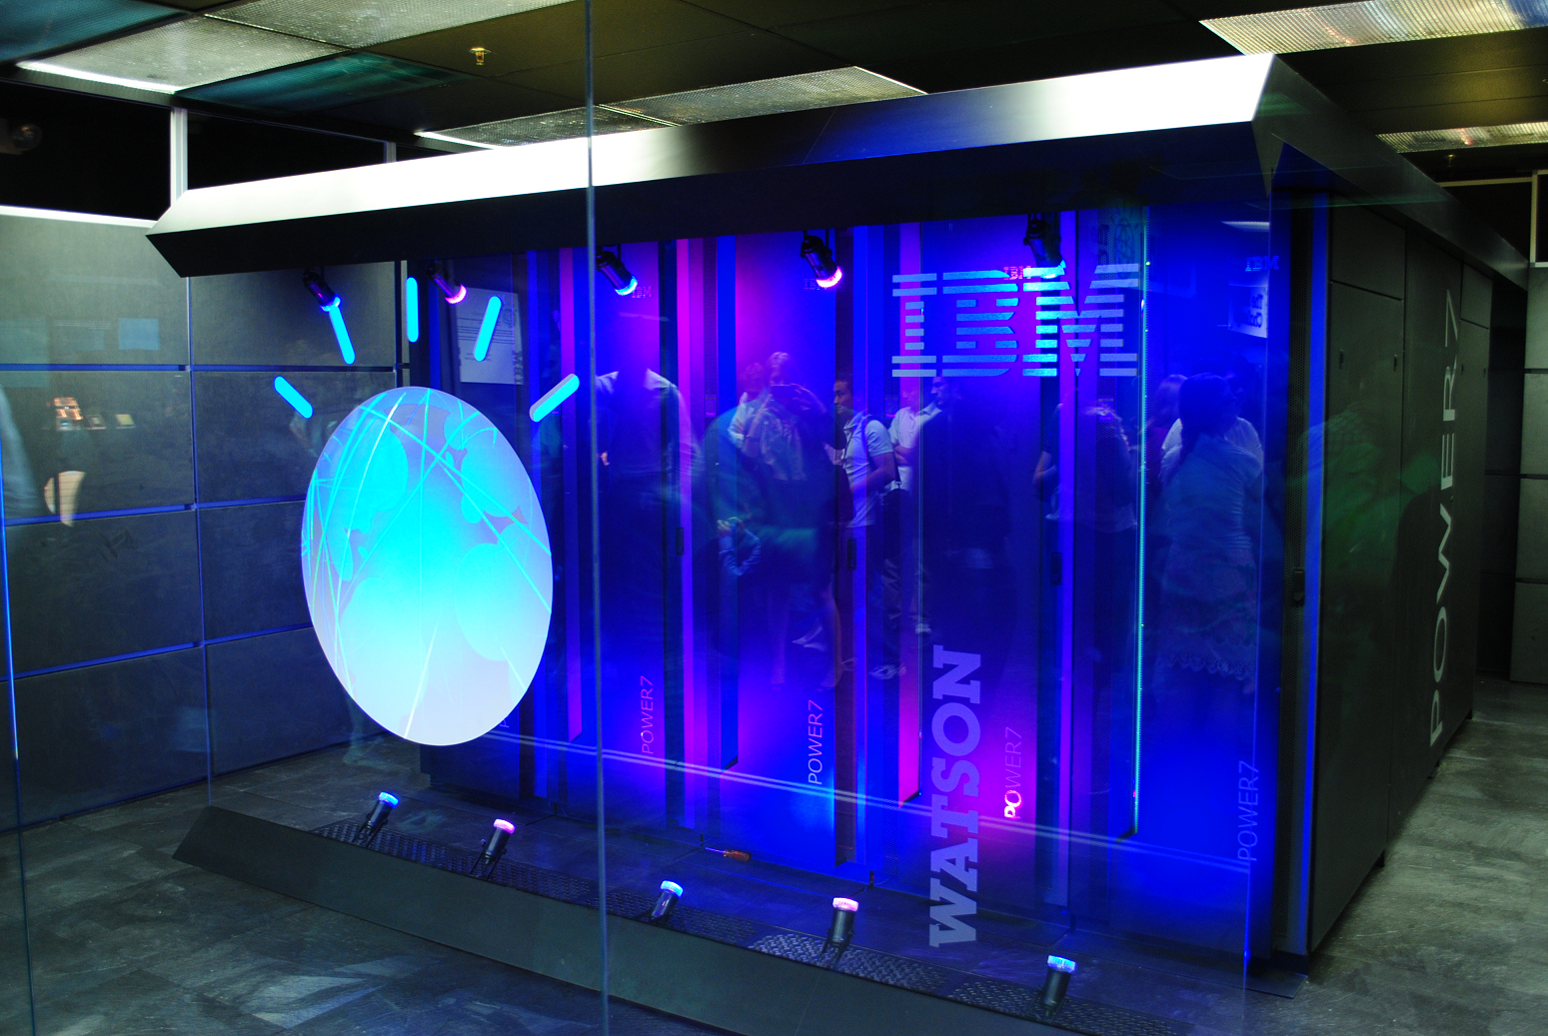 Watson il cognitive computer di IBM non affatto stupido Desktop